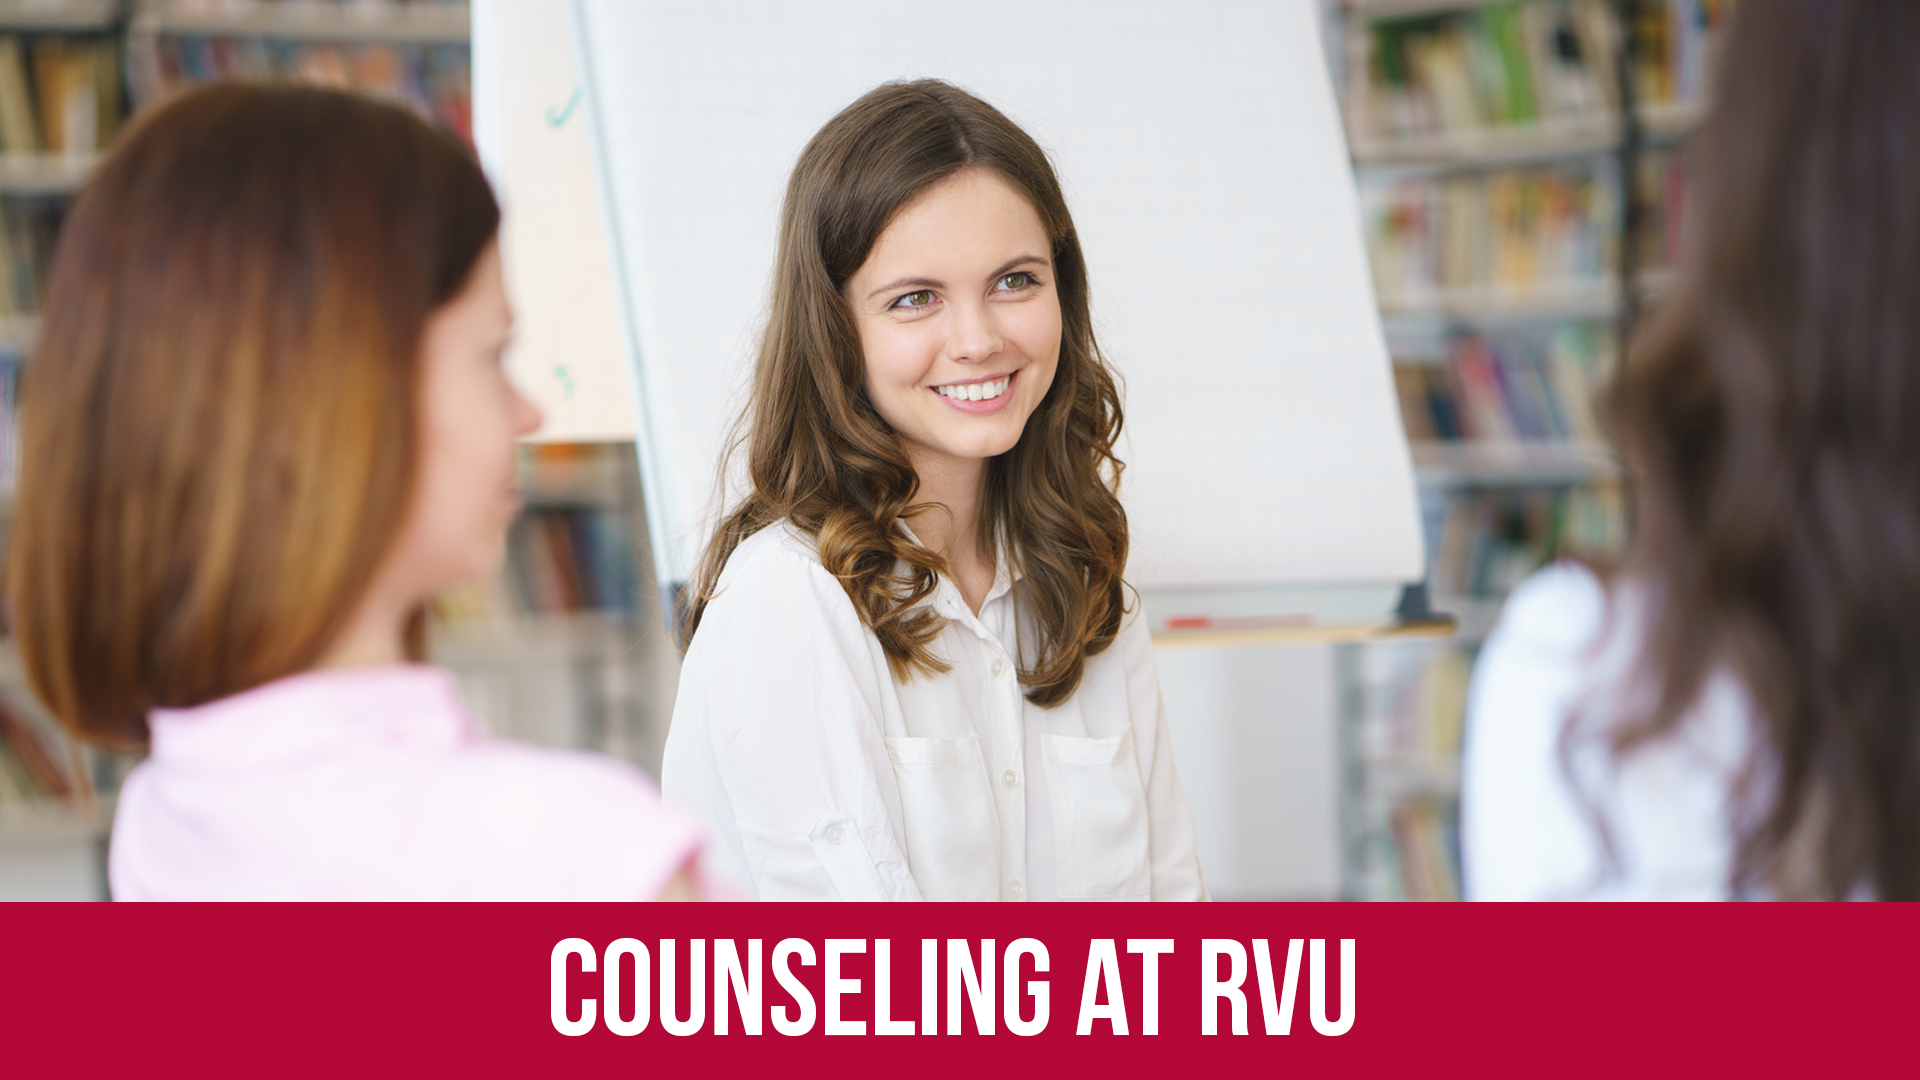 Box Counseling At RVU